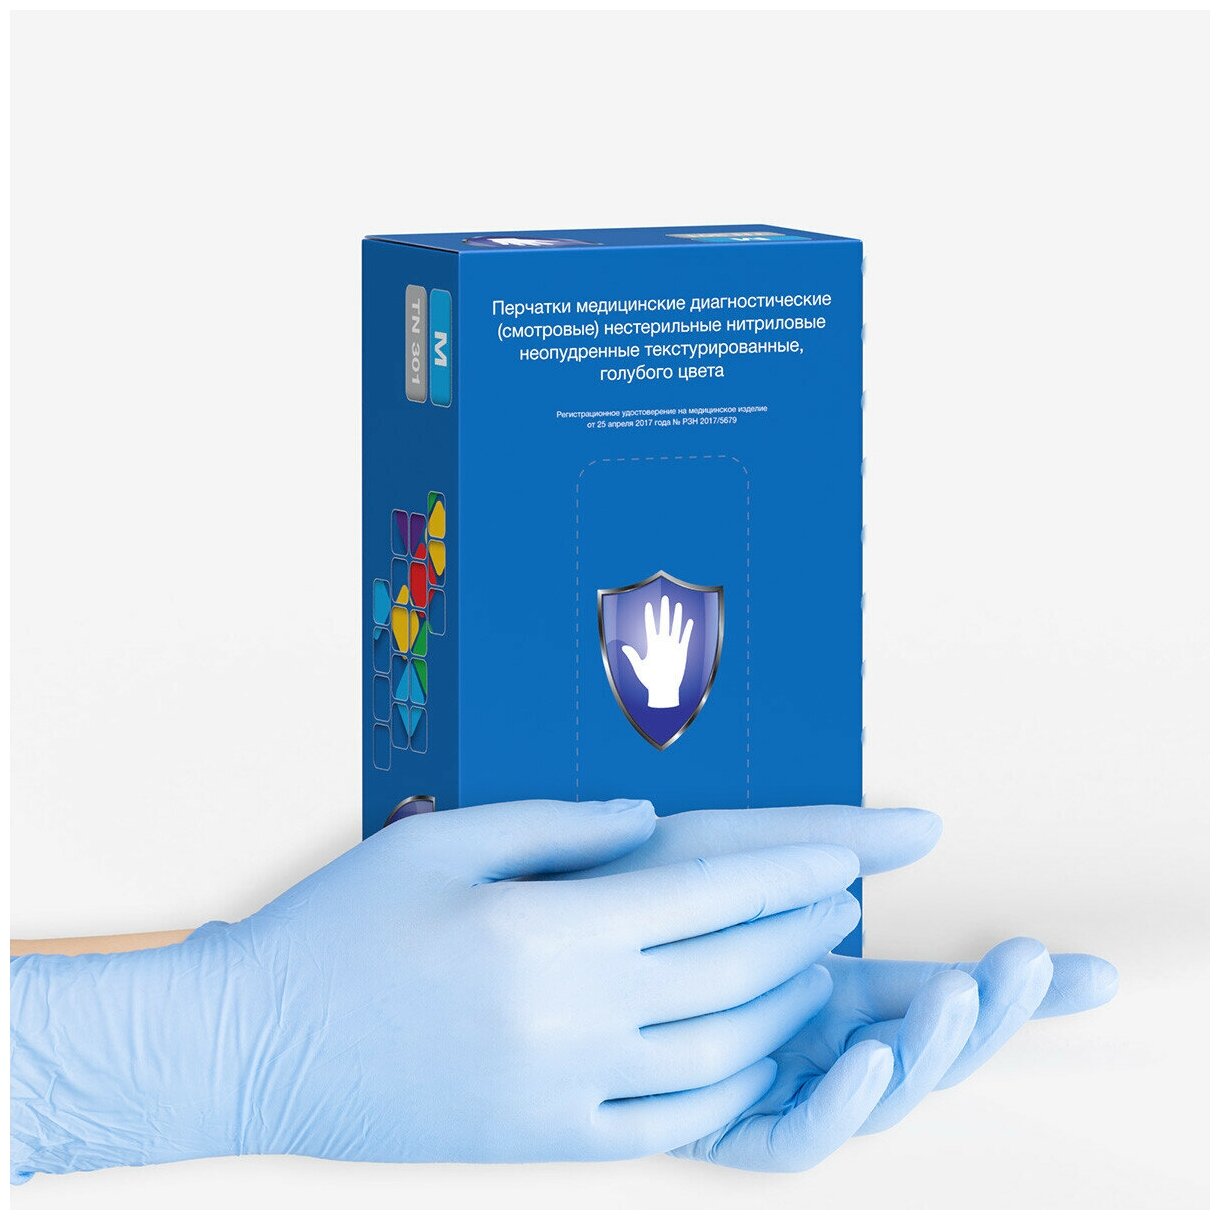 Перчатки нитриловые Safe&Care TN 301, цвет: голубой, размер XL, 200 шт. (100 пар)